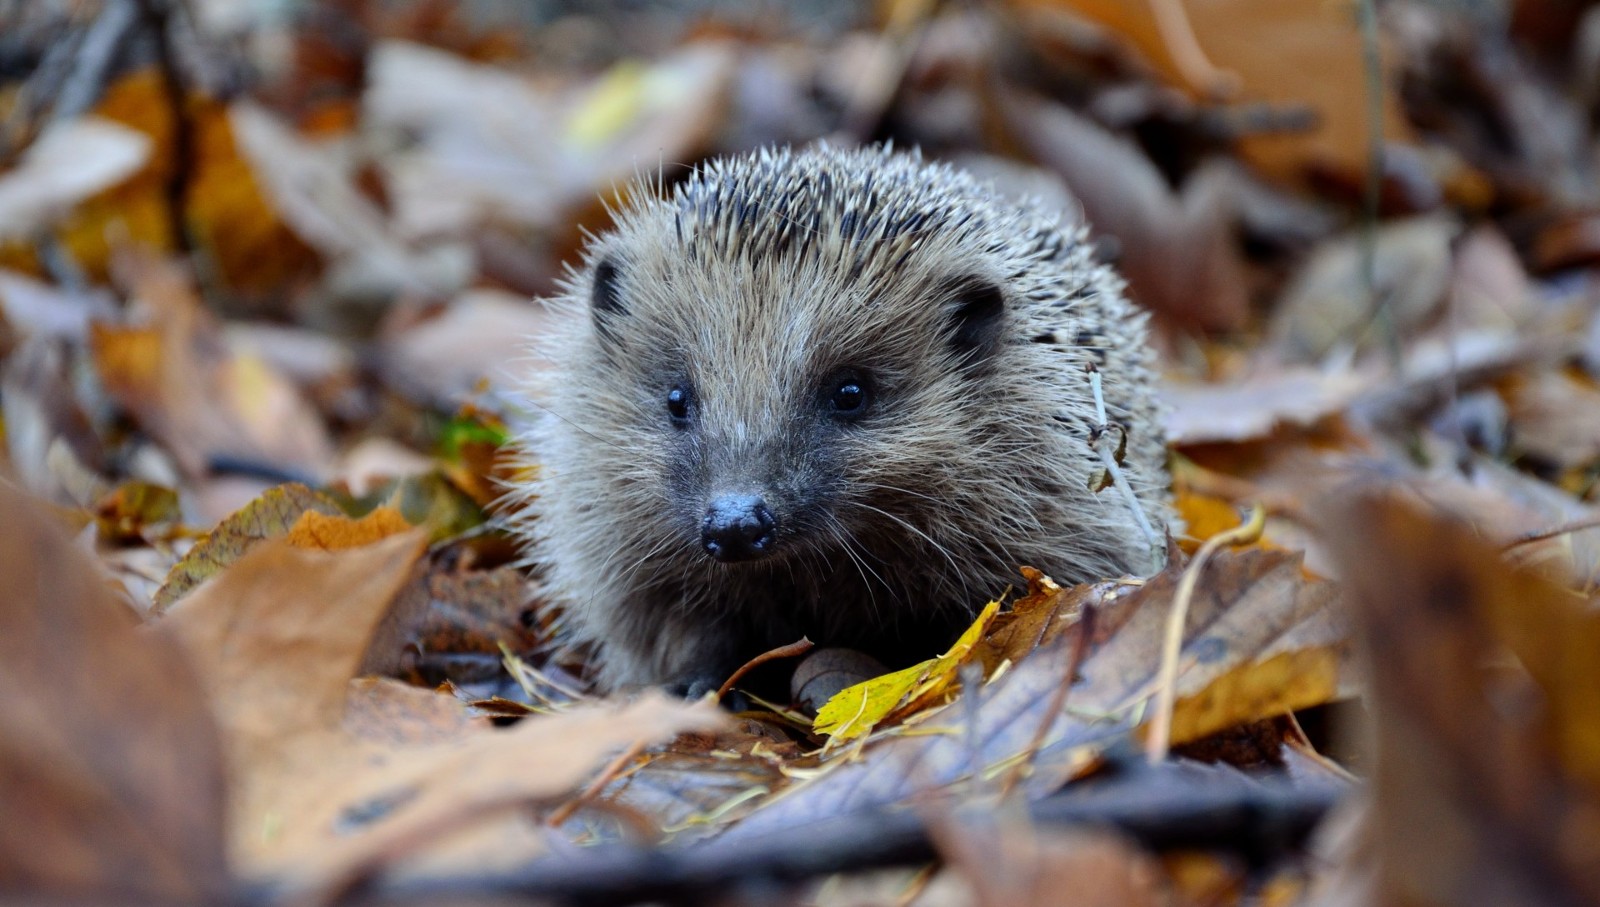 A photo of a hedgehog amongst a pile of dried leaves